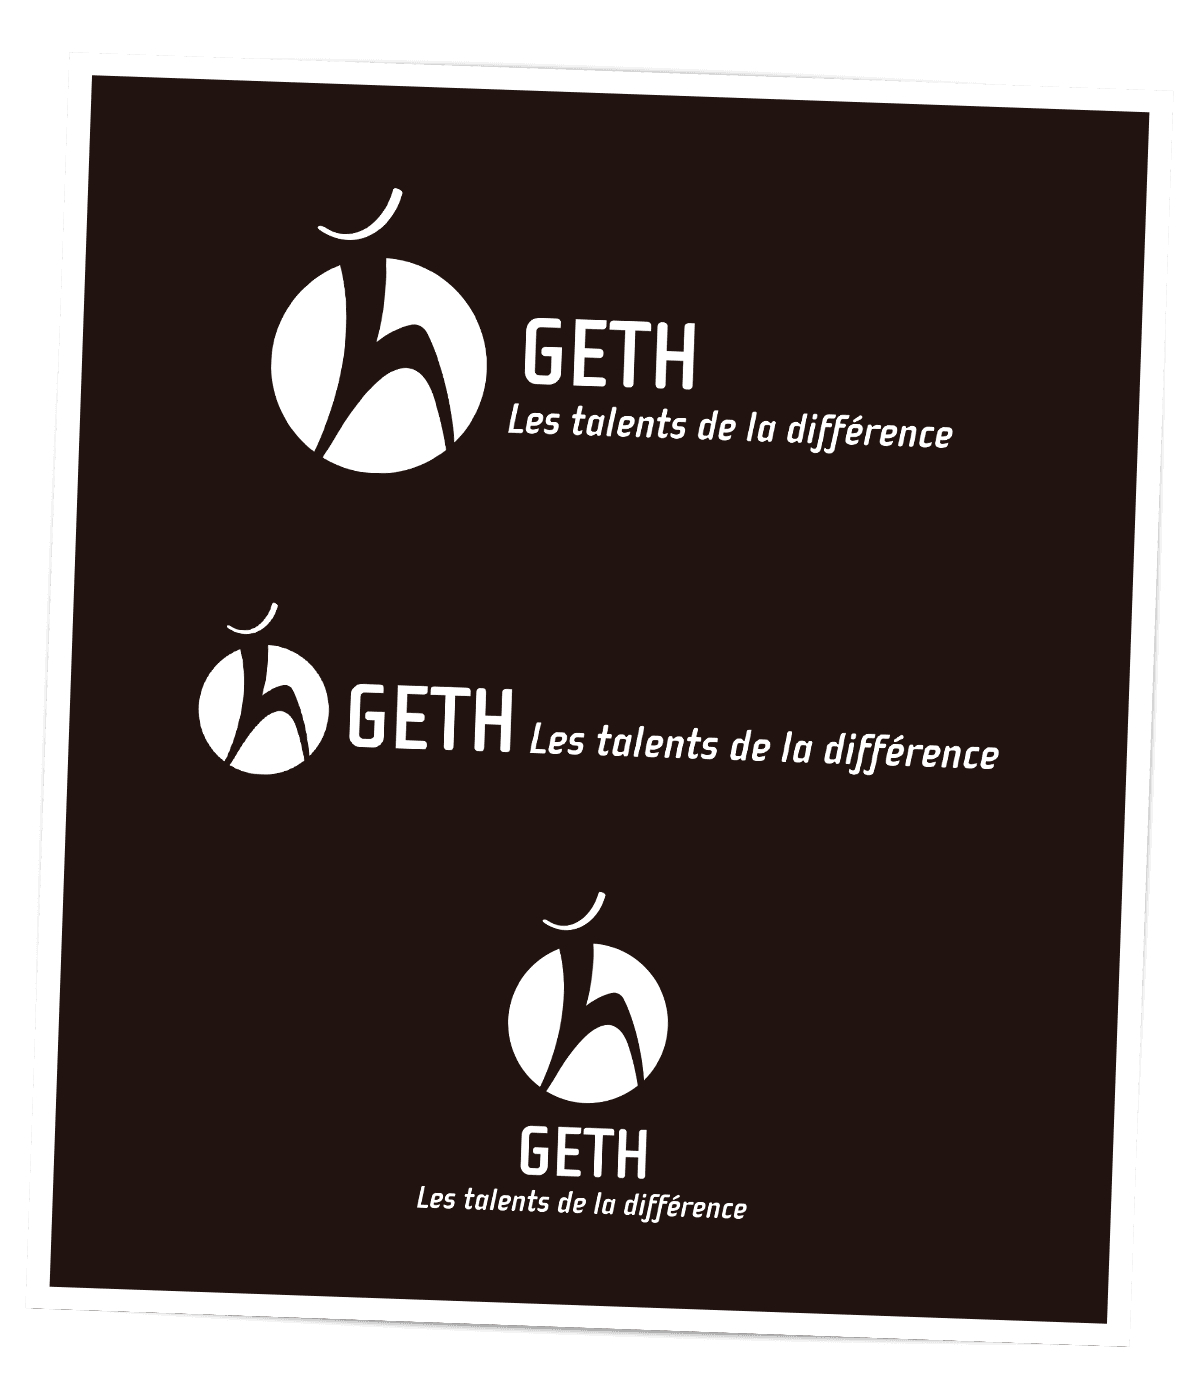 Nouveau logo créé pour le GETH, groupement d'employeurs de travailleurs handicapés, par Caramel & Paprika - Versions négatives du logo de base et des versions alternatives pour intégration sur fonds chargées